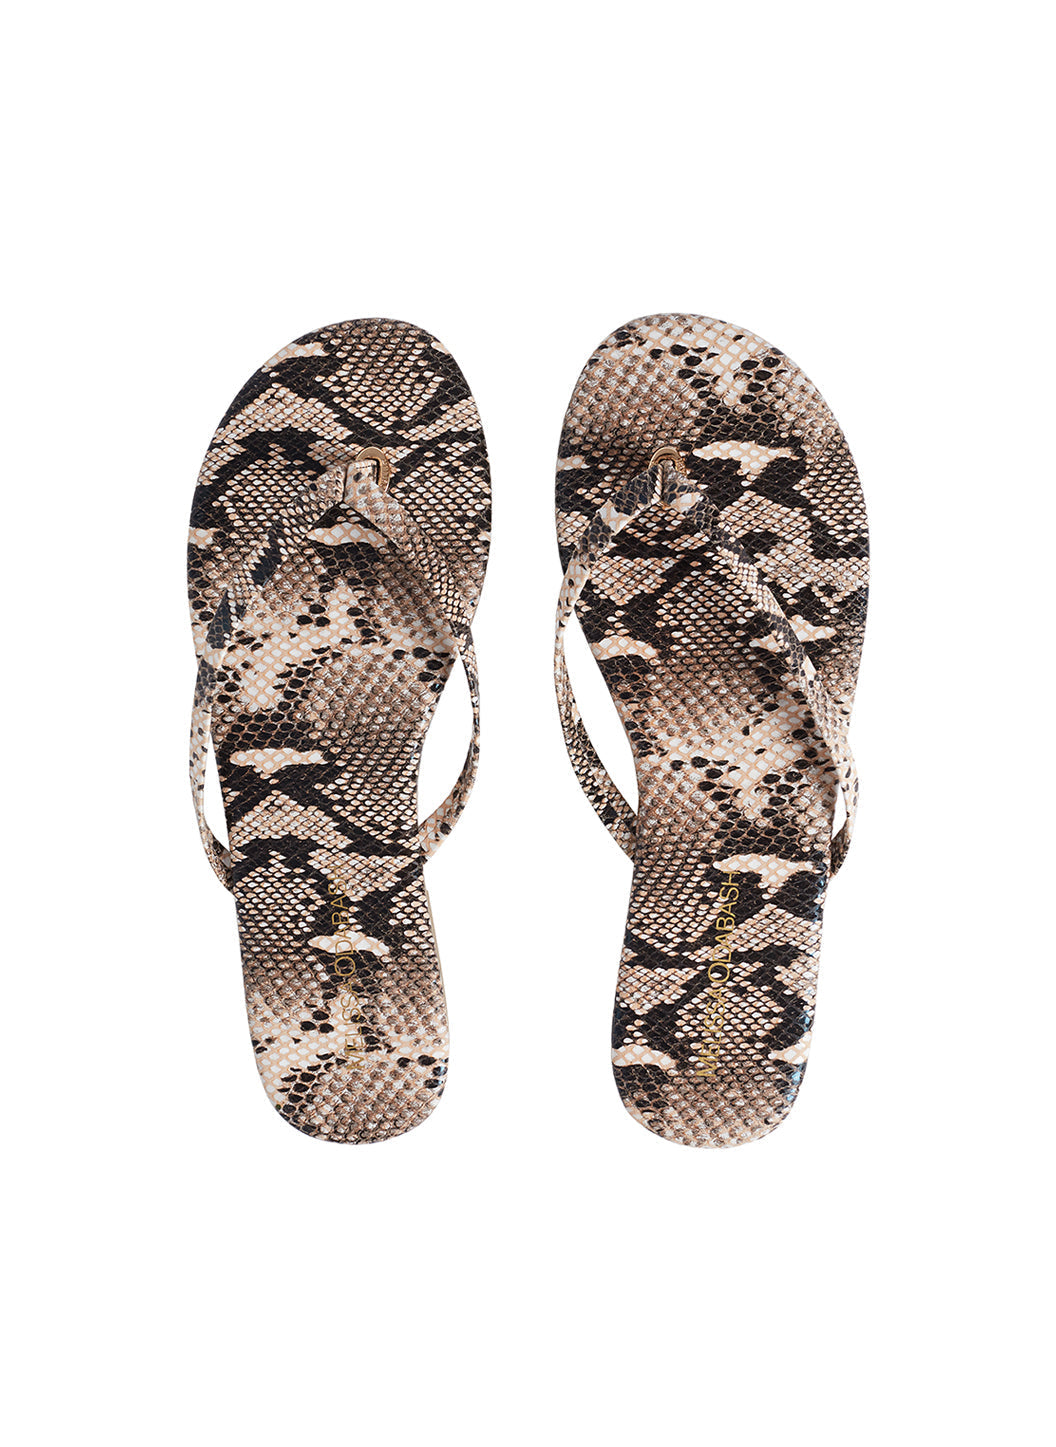 Sandals_Snake_Cutout